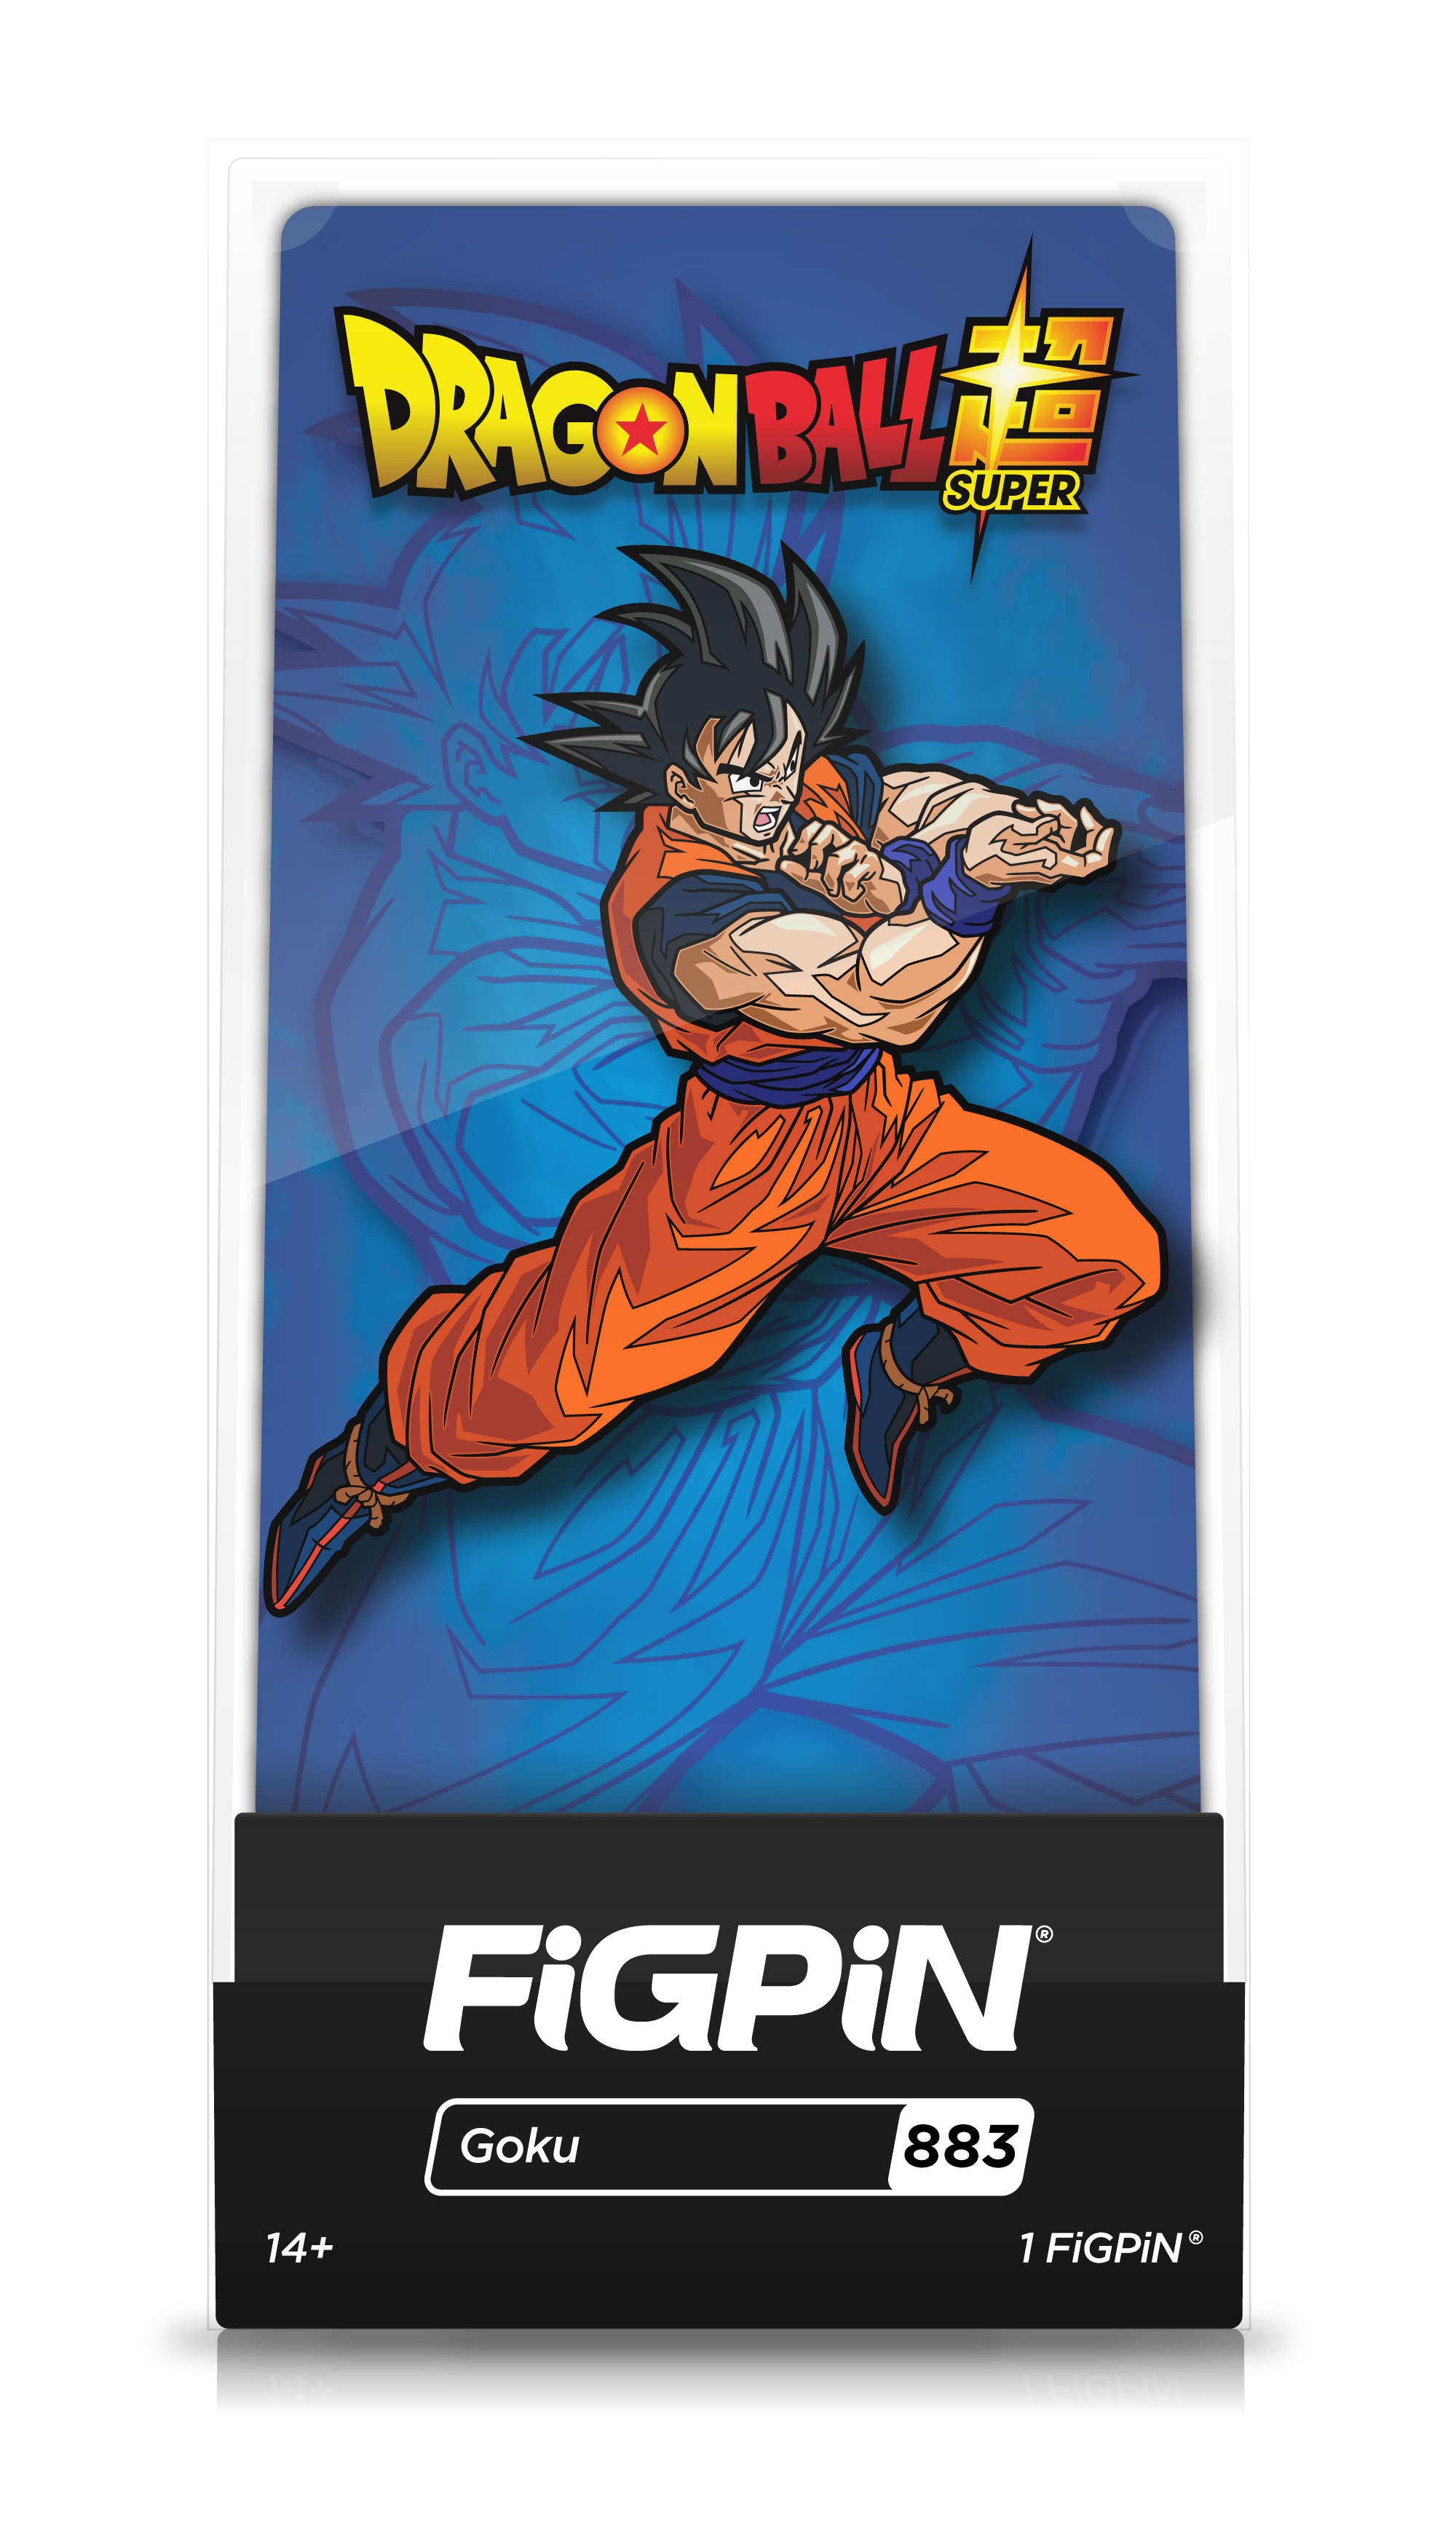 Goku (883)